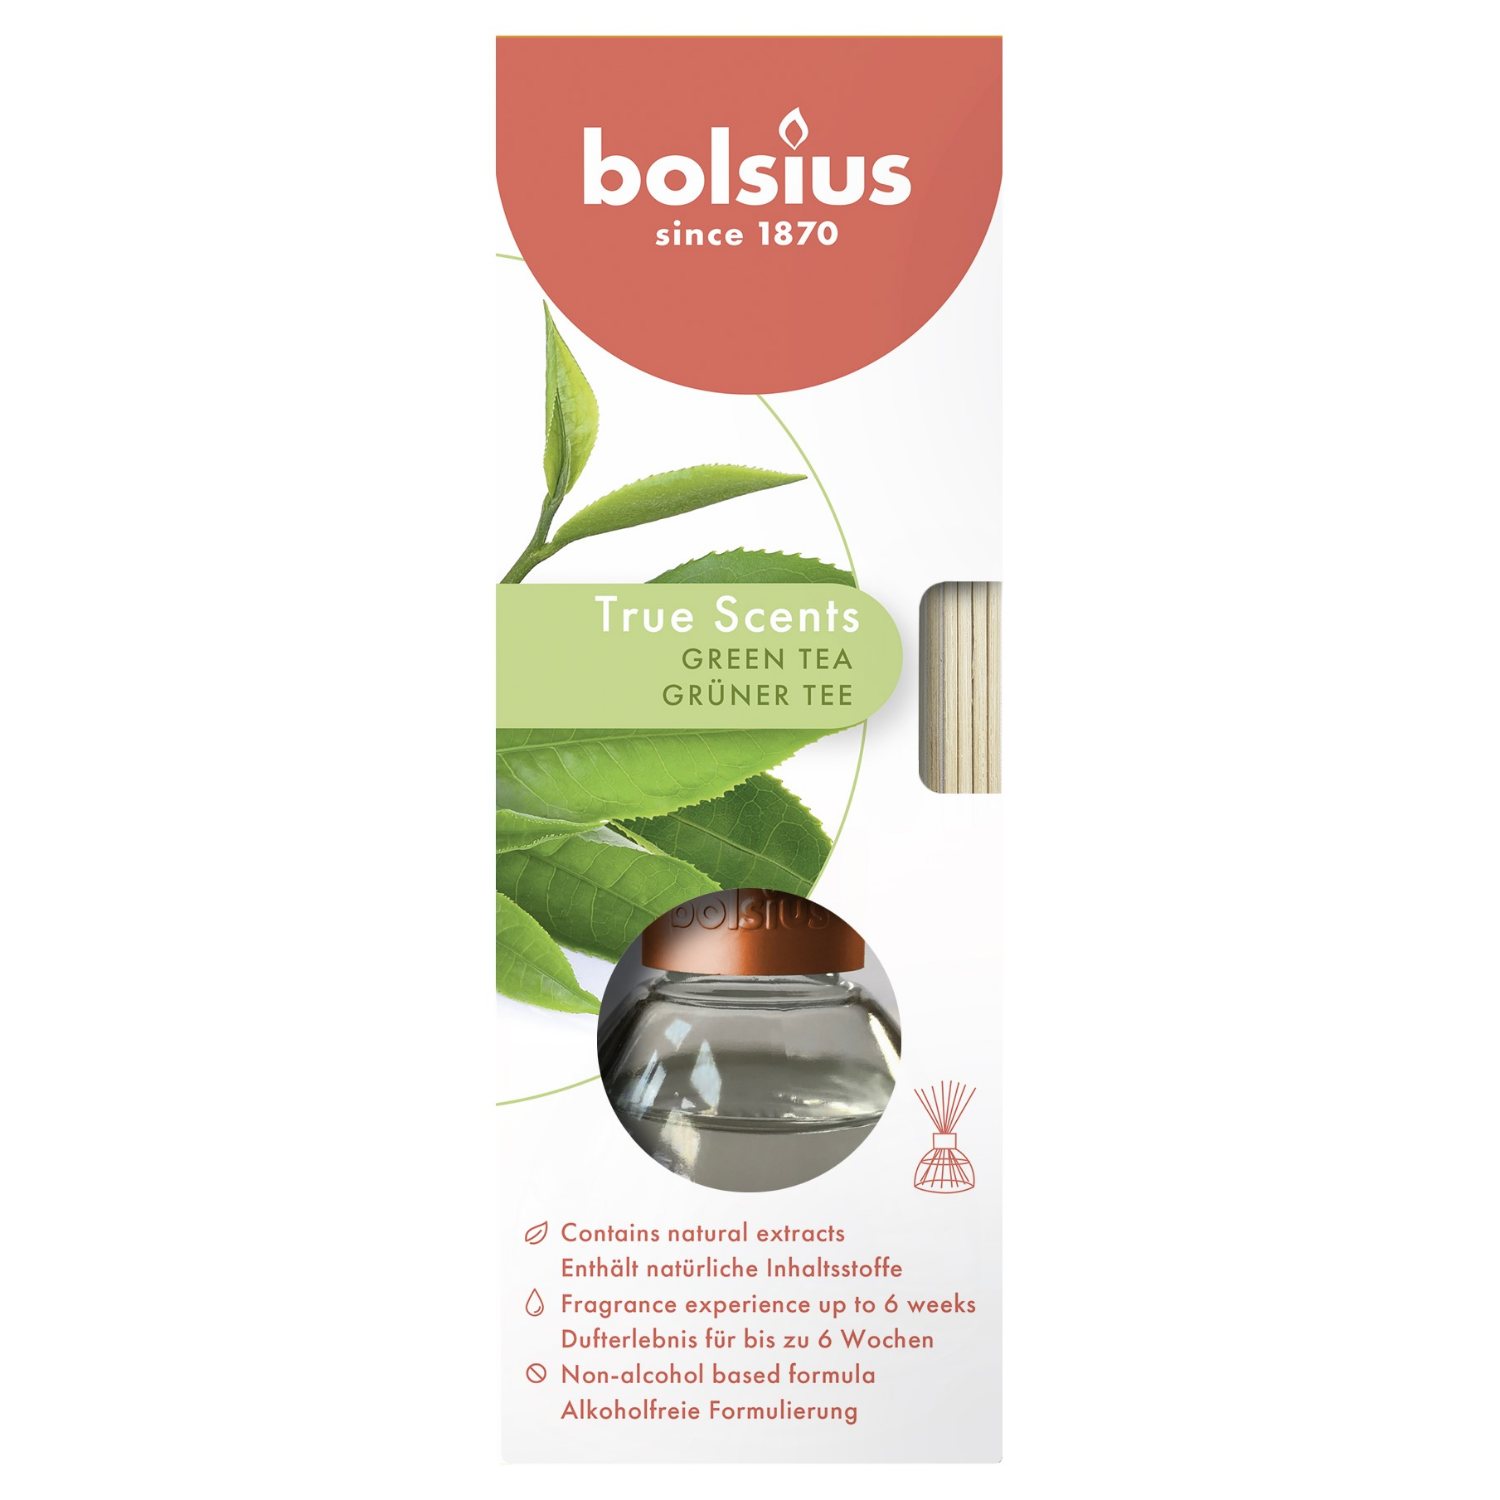 BOLSIUS GEURVERSPREIDER GREEN TEA 45ML - 160 1643 - 533200